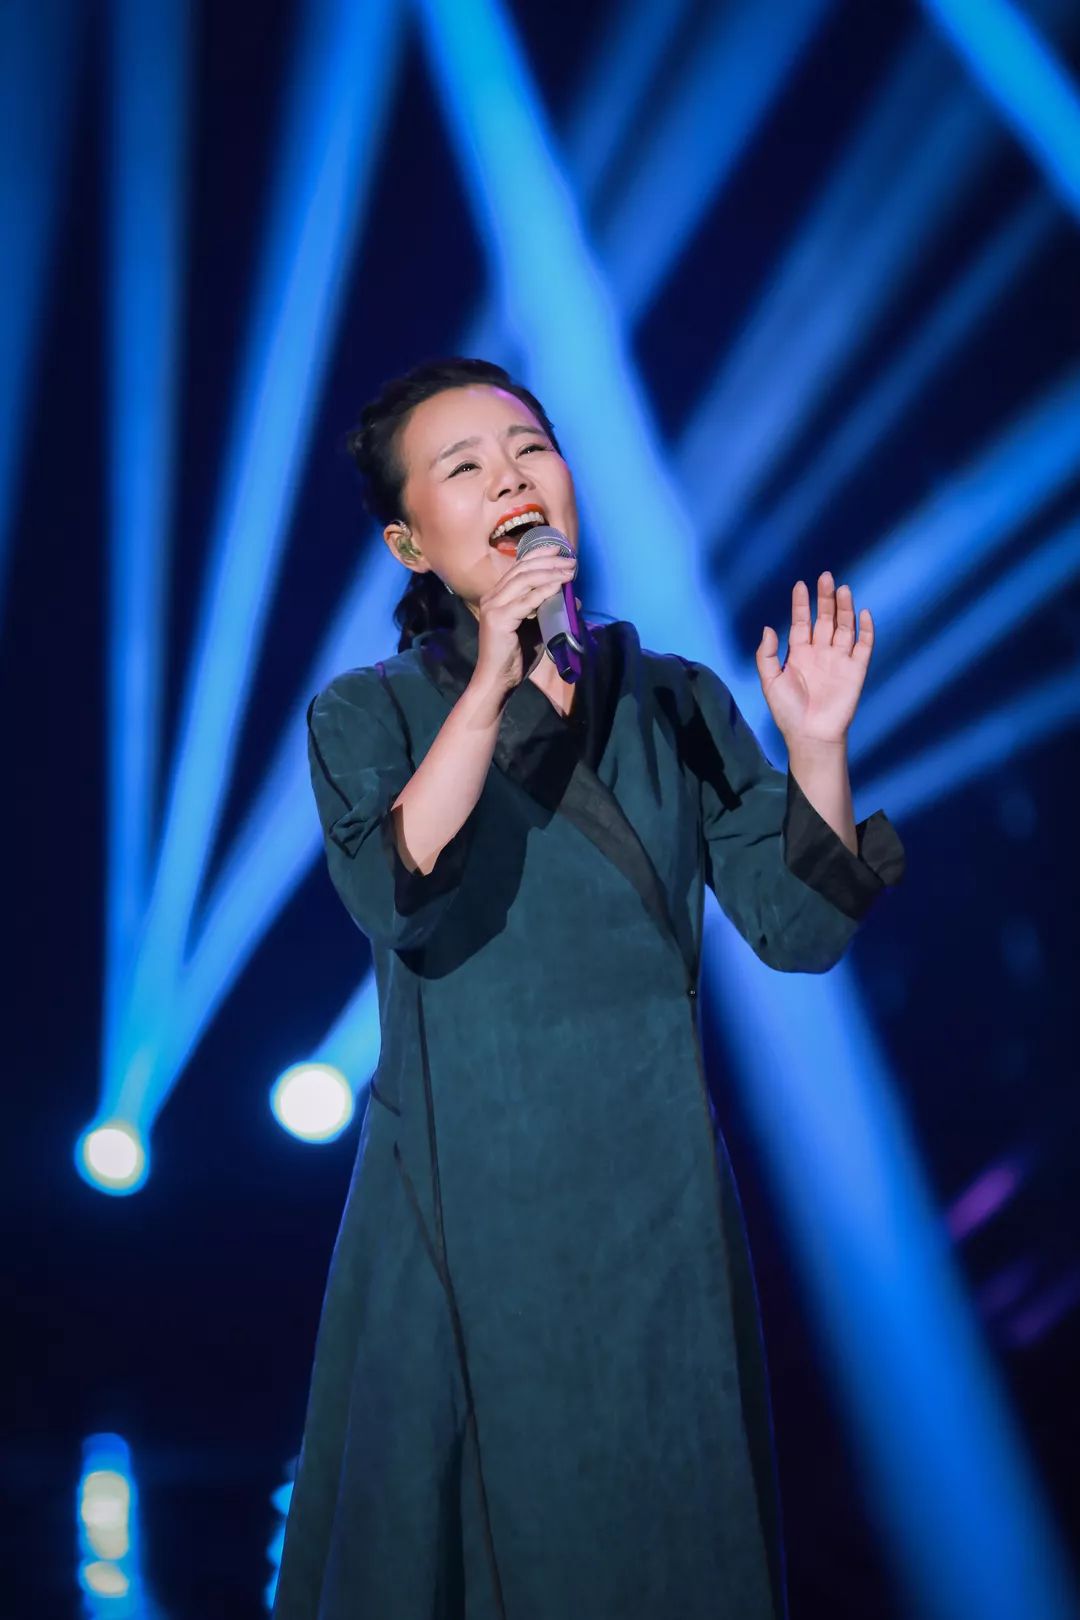 唱具有中国音乐之魂的歌,是龚琳娜此次来到《歌手》的目的